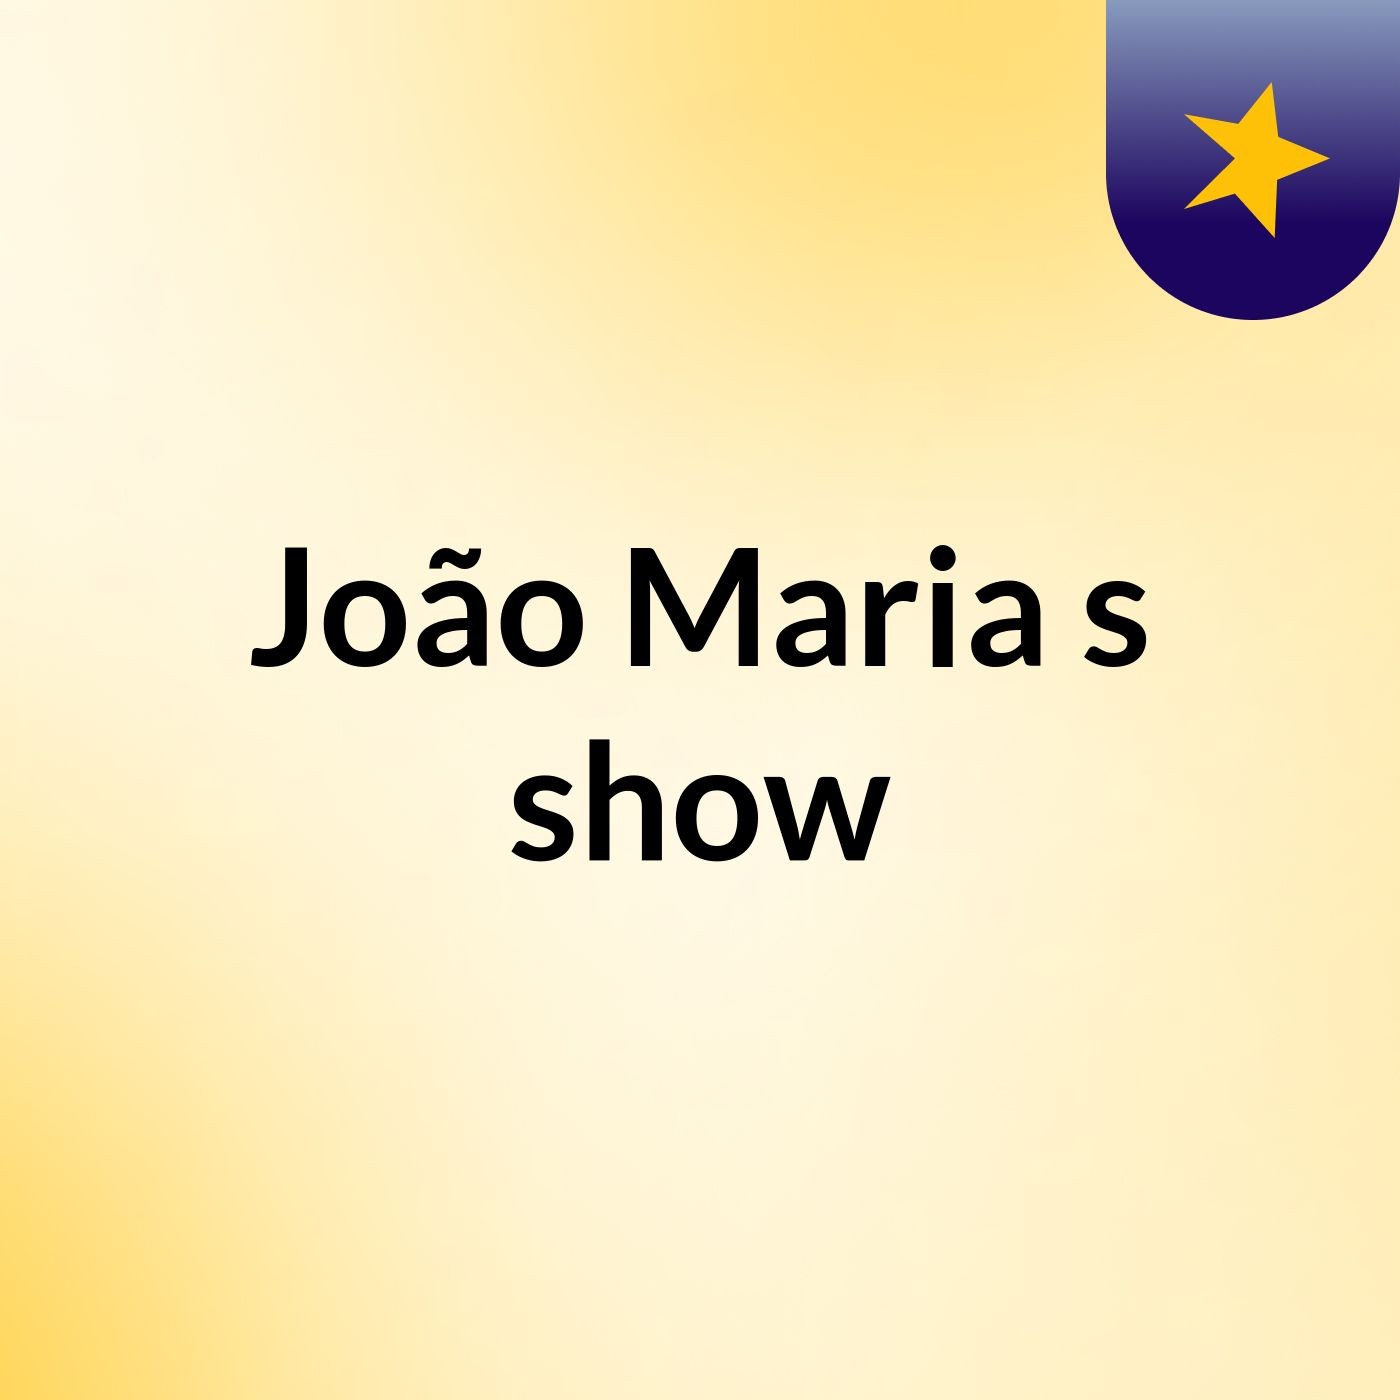 João Maria's show